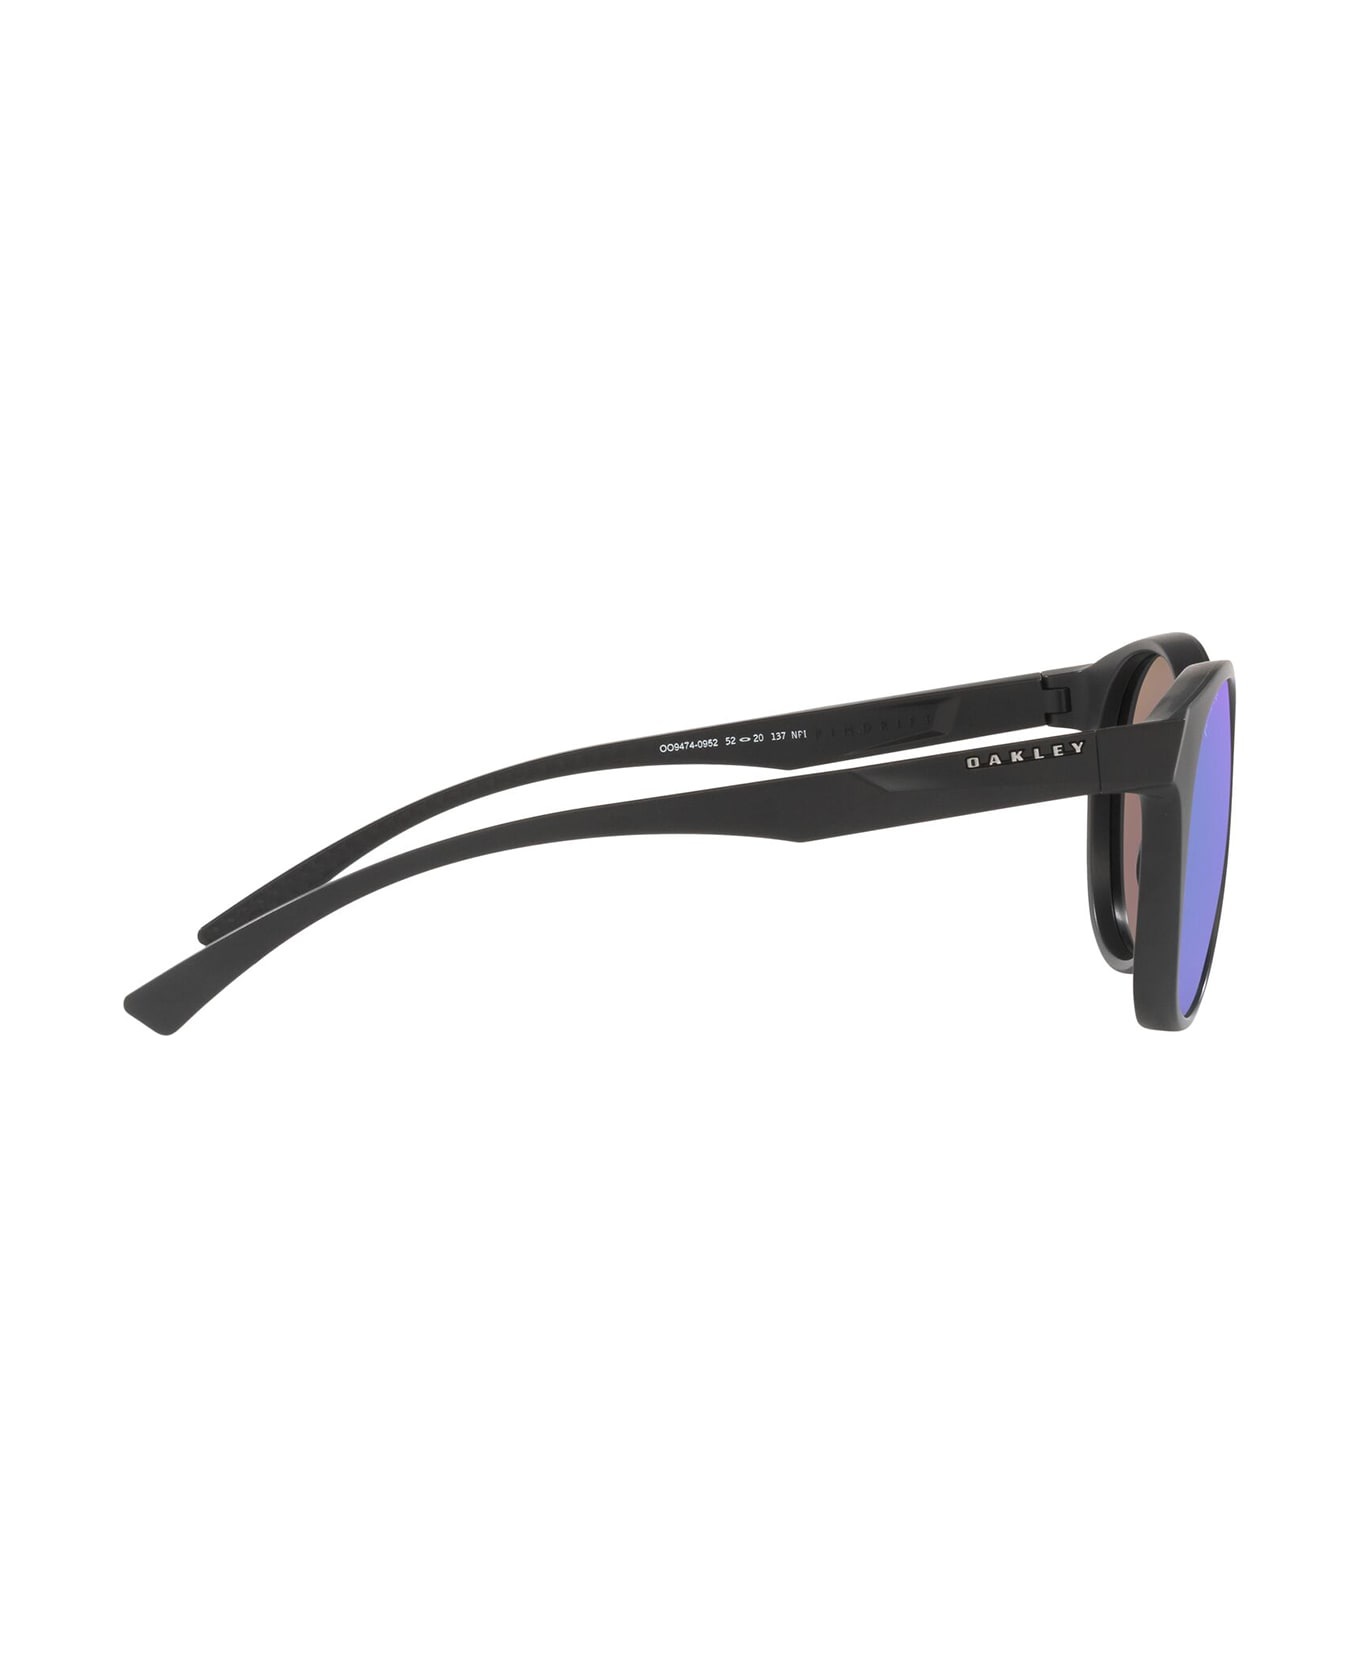 Oakley Oo9474 Matte Carbon Sunglasses - Matte Carbon